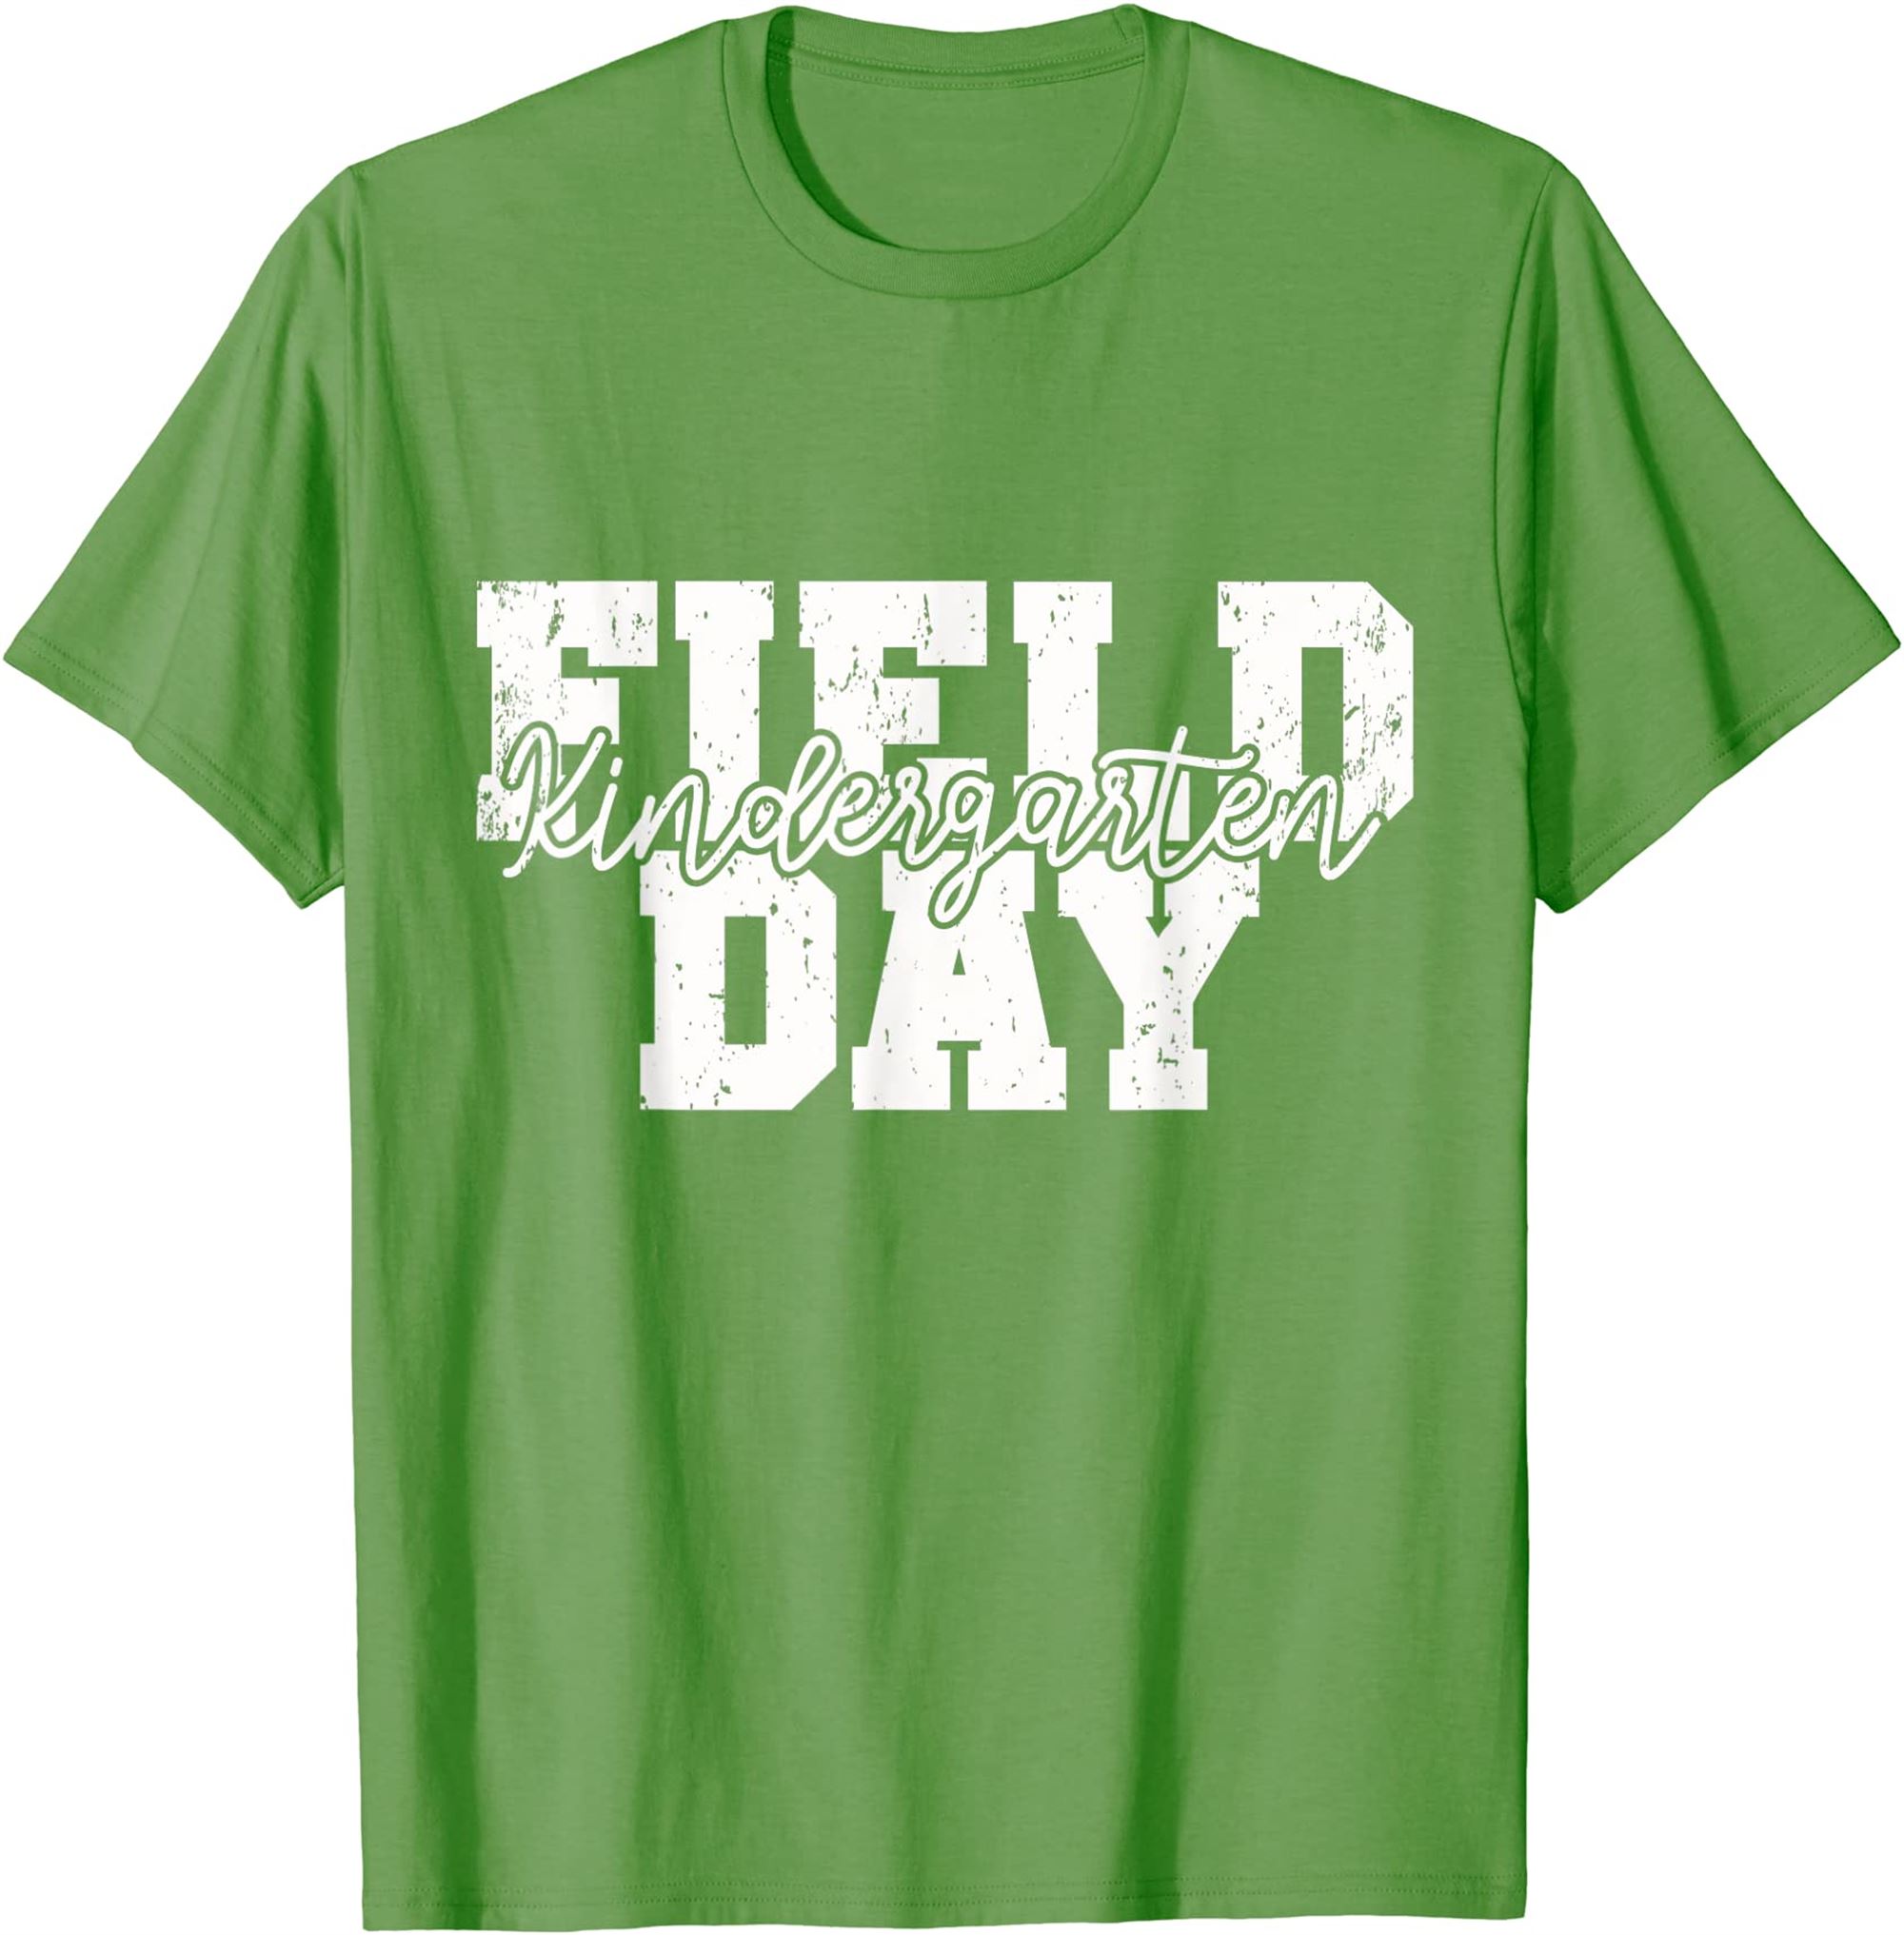 Field Day 2022 Kindergarten School Teacher Kids Green T-shirt Full Size Up To 5xl